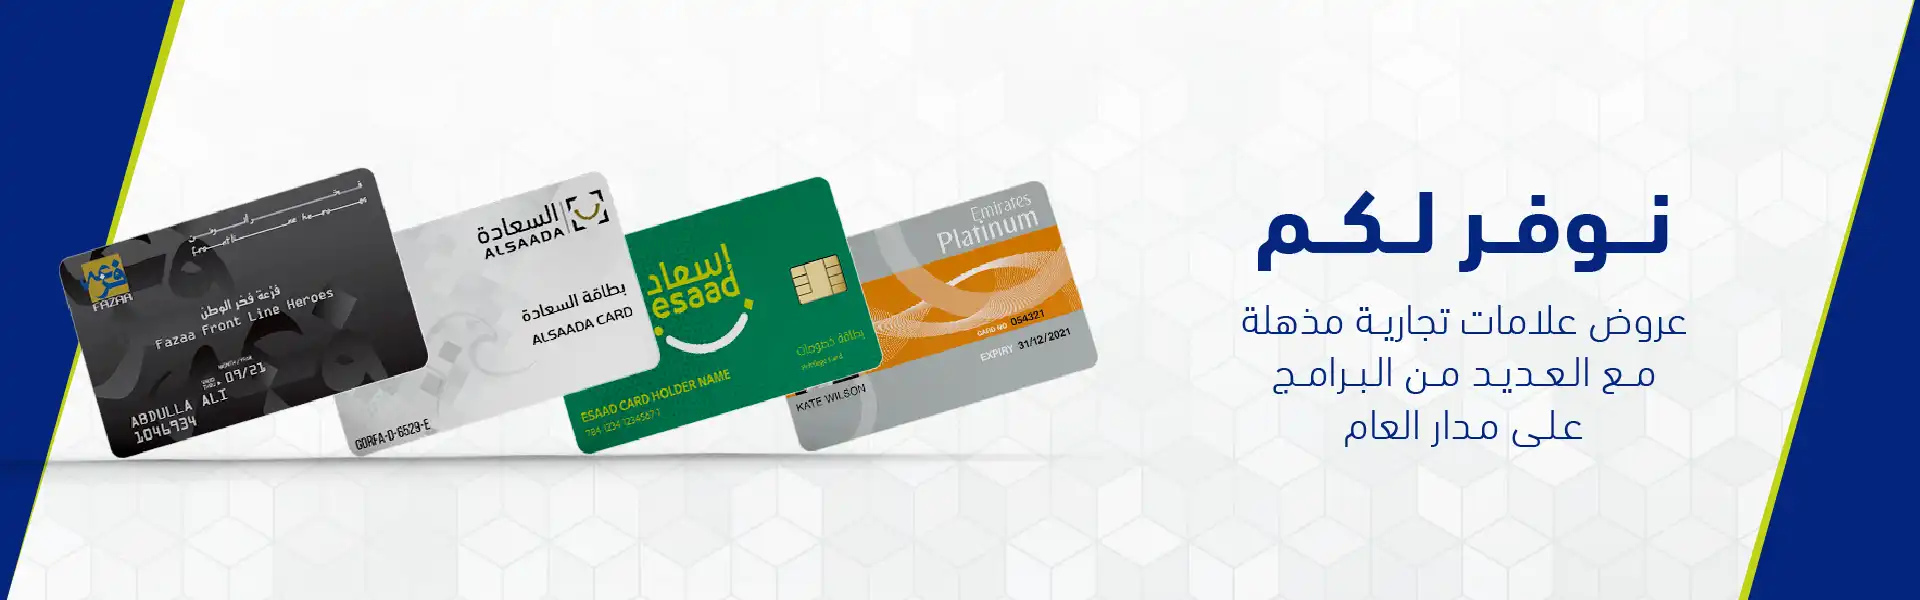 شراكة مجموعة أباريل مع بطاقات فزعة والسعادة وإسعاد و طيران الإماراتفلاي دبي بلاتينوم